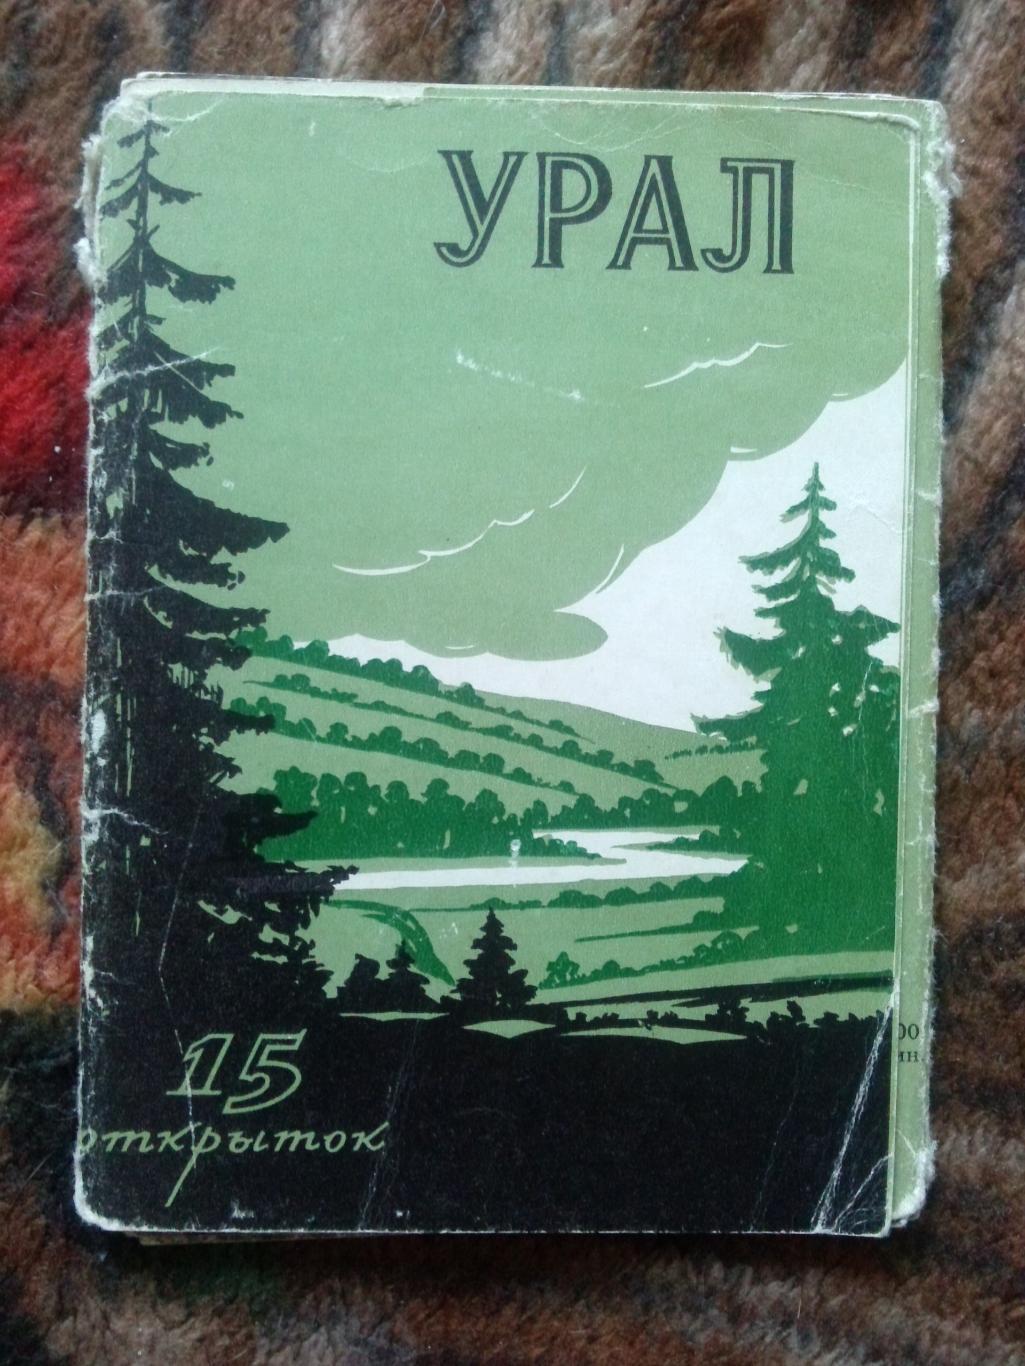 Памятные места СССР : Урал 1956 г. (Изогиз) полный набор - 15 открыток (чистые)